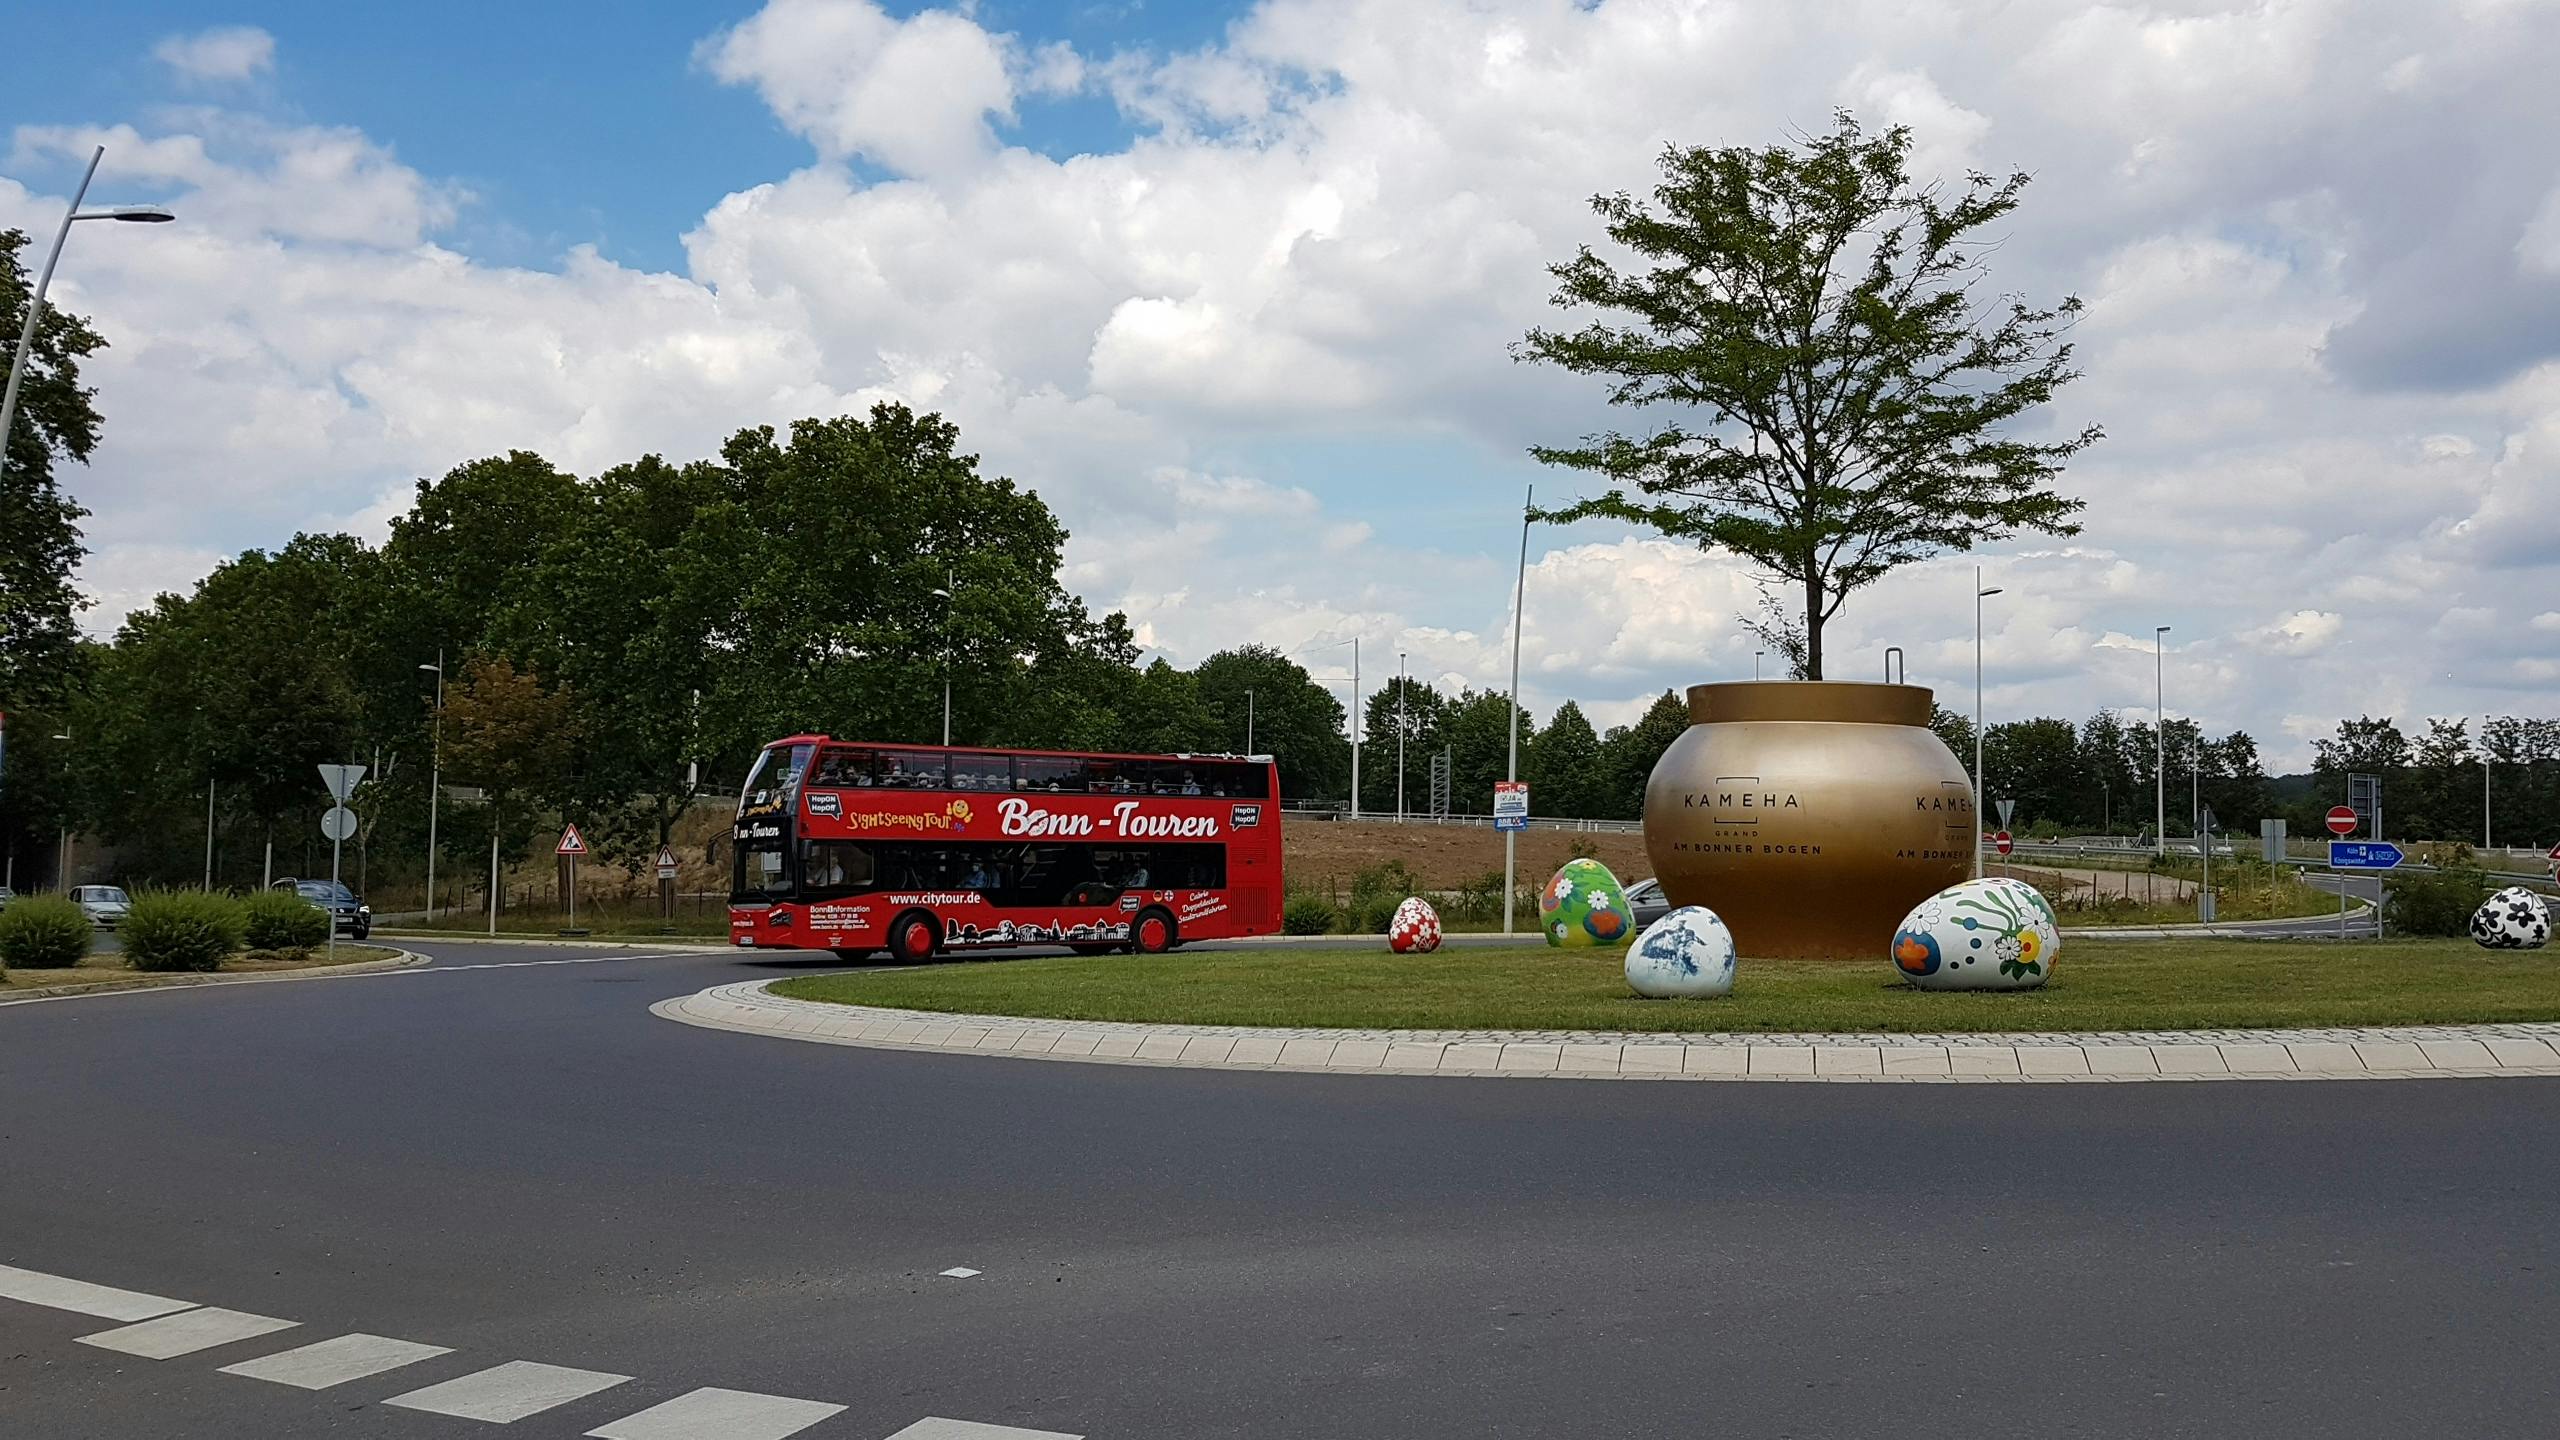 24-hour Bonn hop-on hop-off bus tour